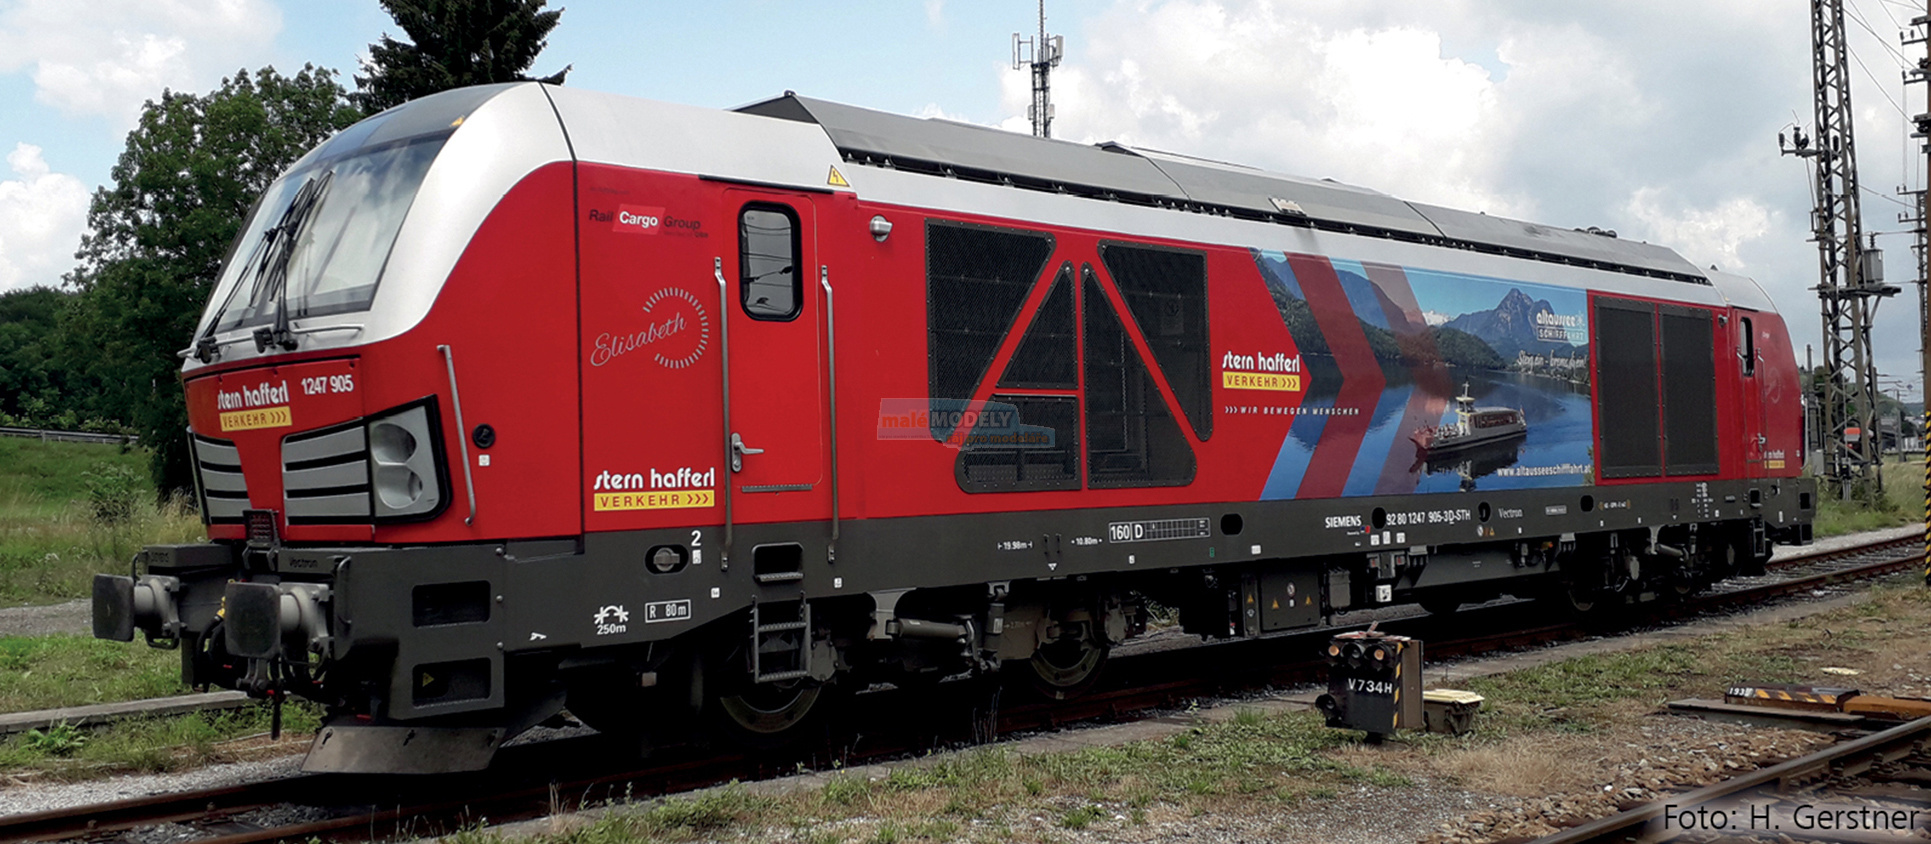 Dieselová lokomotiva 1247 905, Stern & Hafferl Verkehrsgesellschaft m.b.H. (AT) - (31.03.2021)